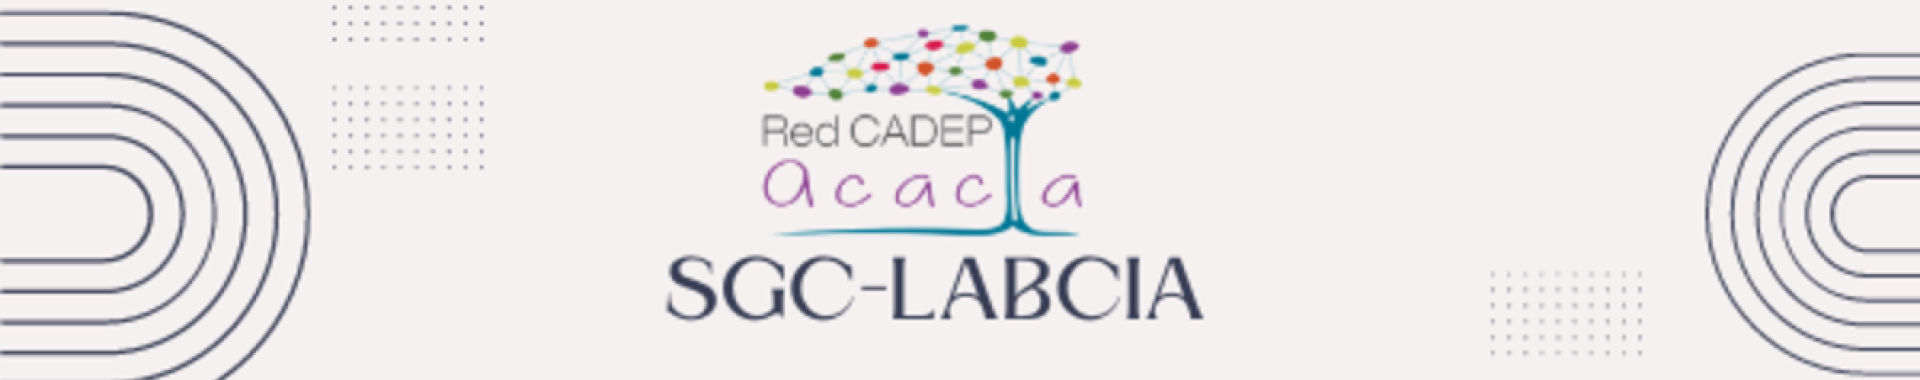 SGC-LabCIA logo